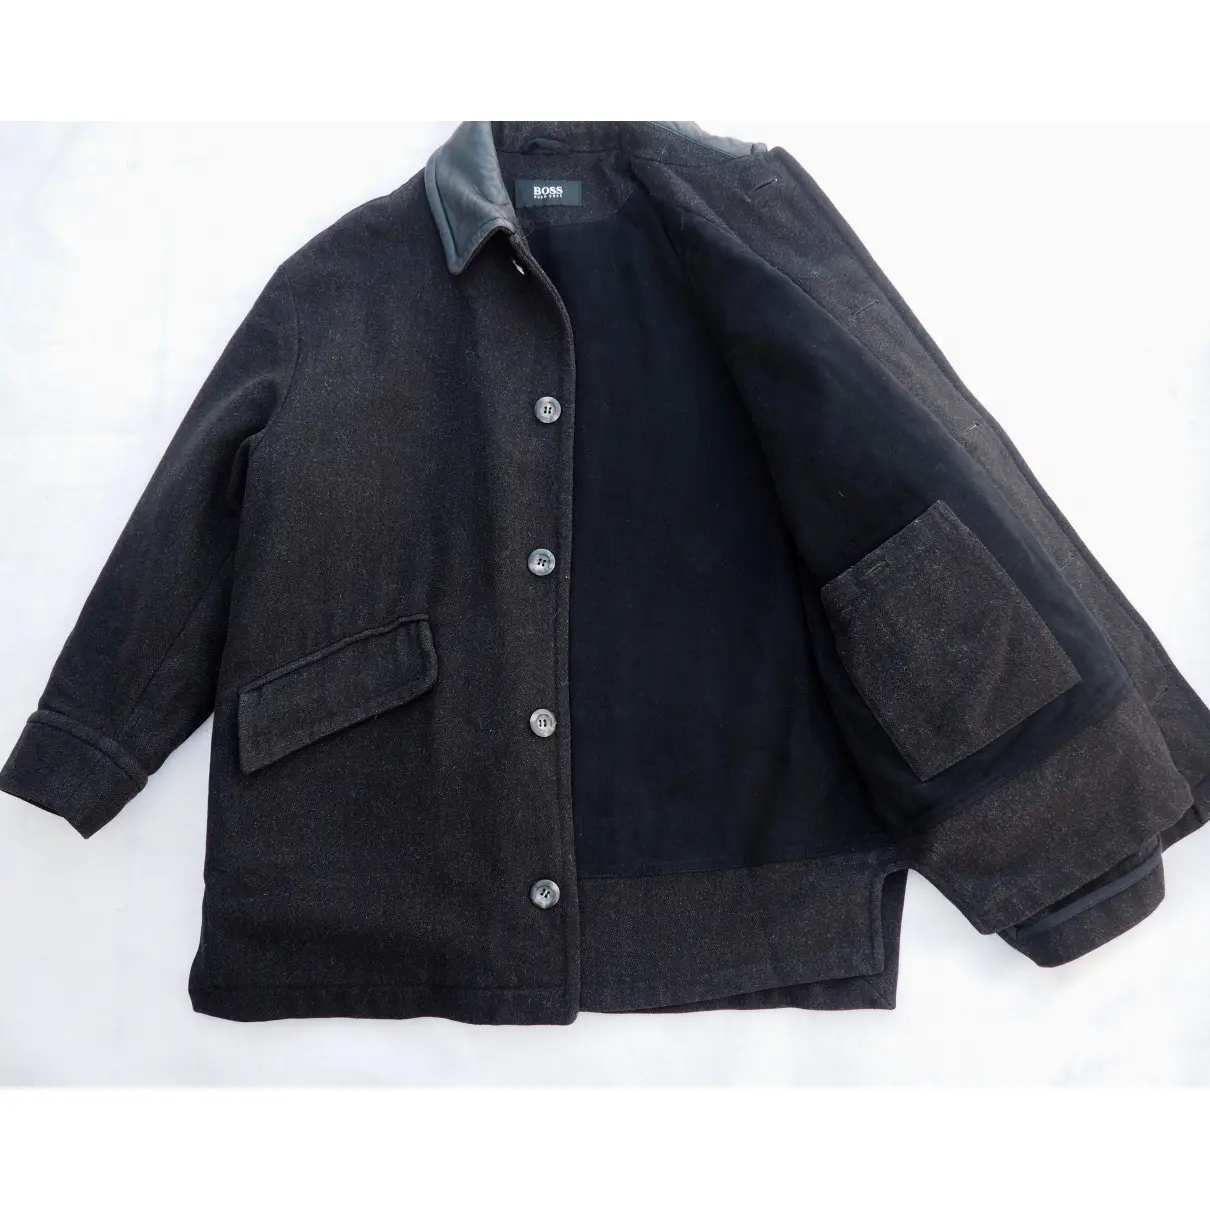 Buy Hugo Boss Wool coat online - Vintage